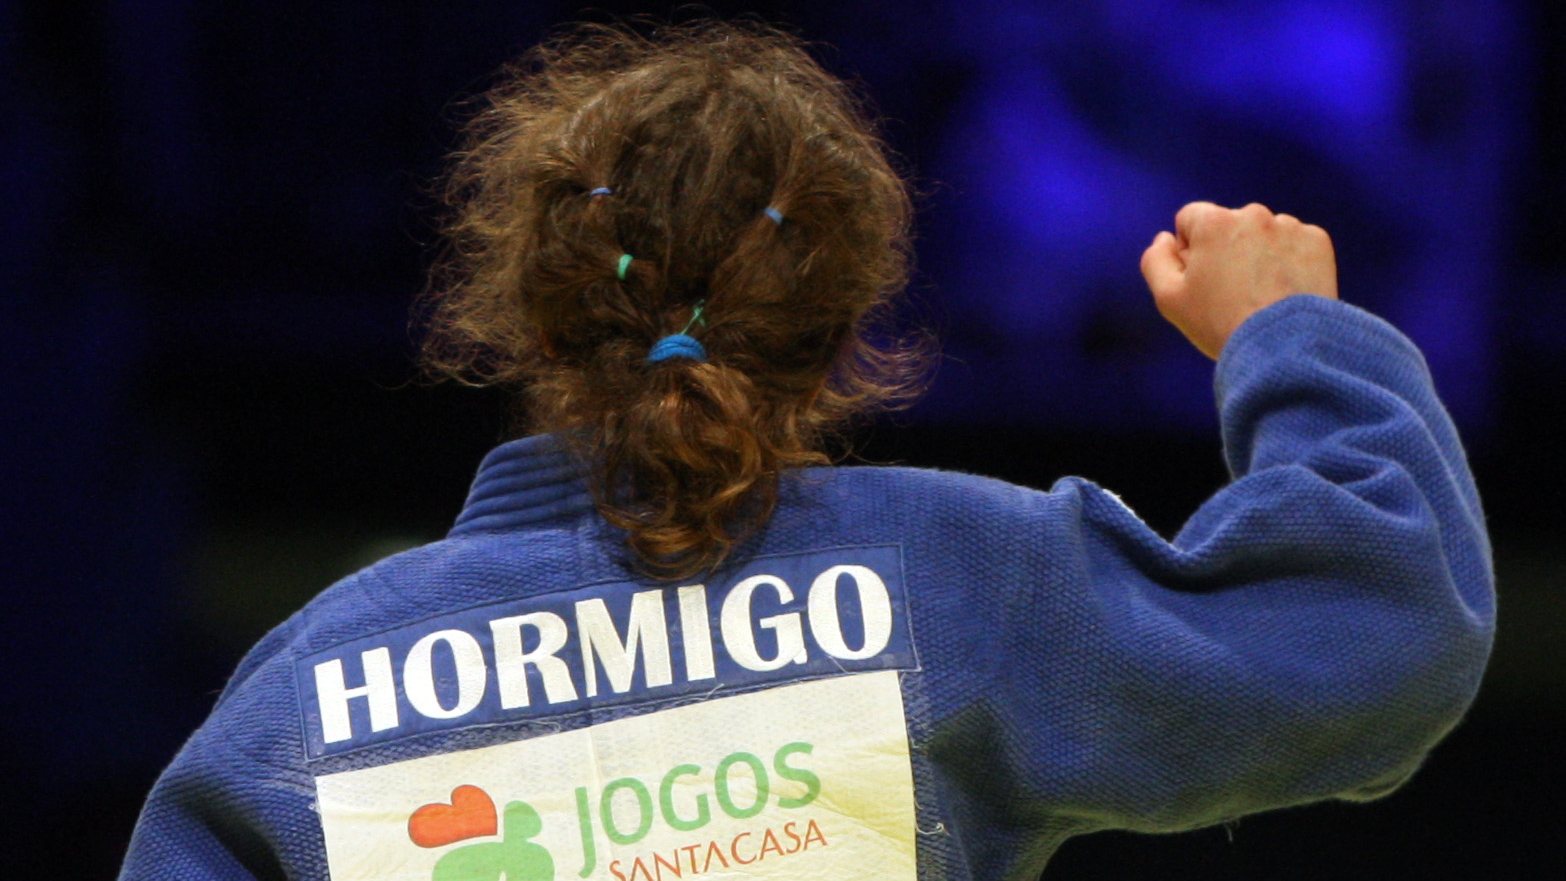 A judoca portuguesa, Ana Hormigo, festeja após vencer a medalha de bronze na categoria de-48 kg, no Campeonato Europeu de Judo que decorre no Pavilhão Atlântico, em Lisboa, a 11 de abril de 2008. INÁCIO ROSA/LUSA